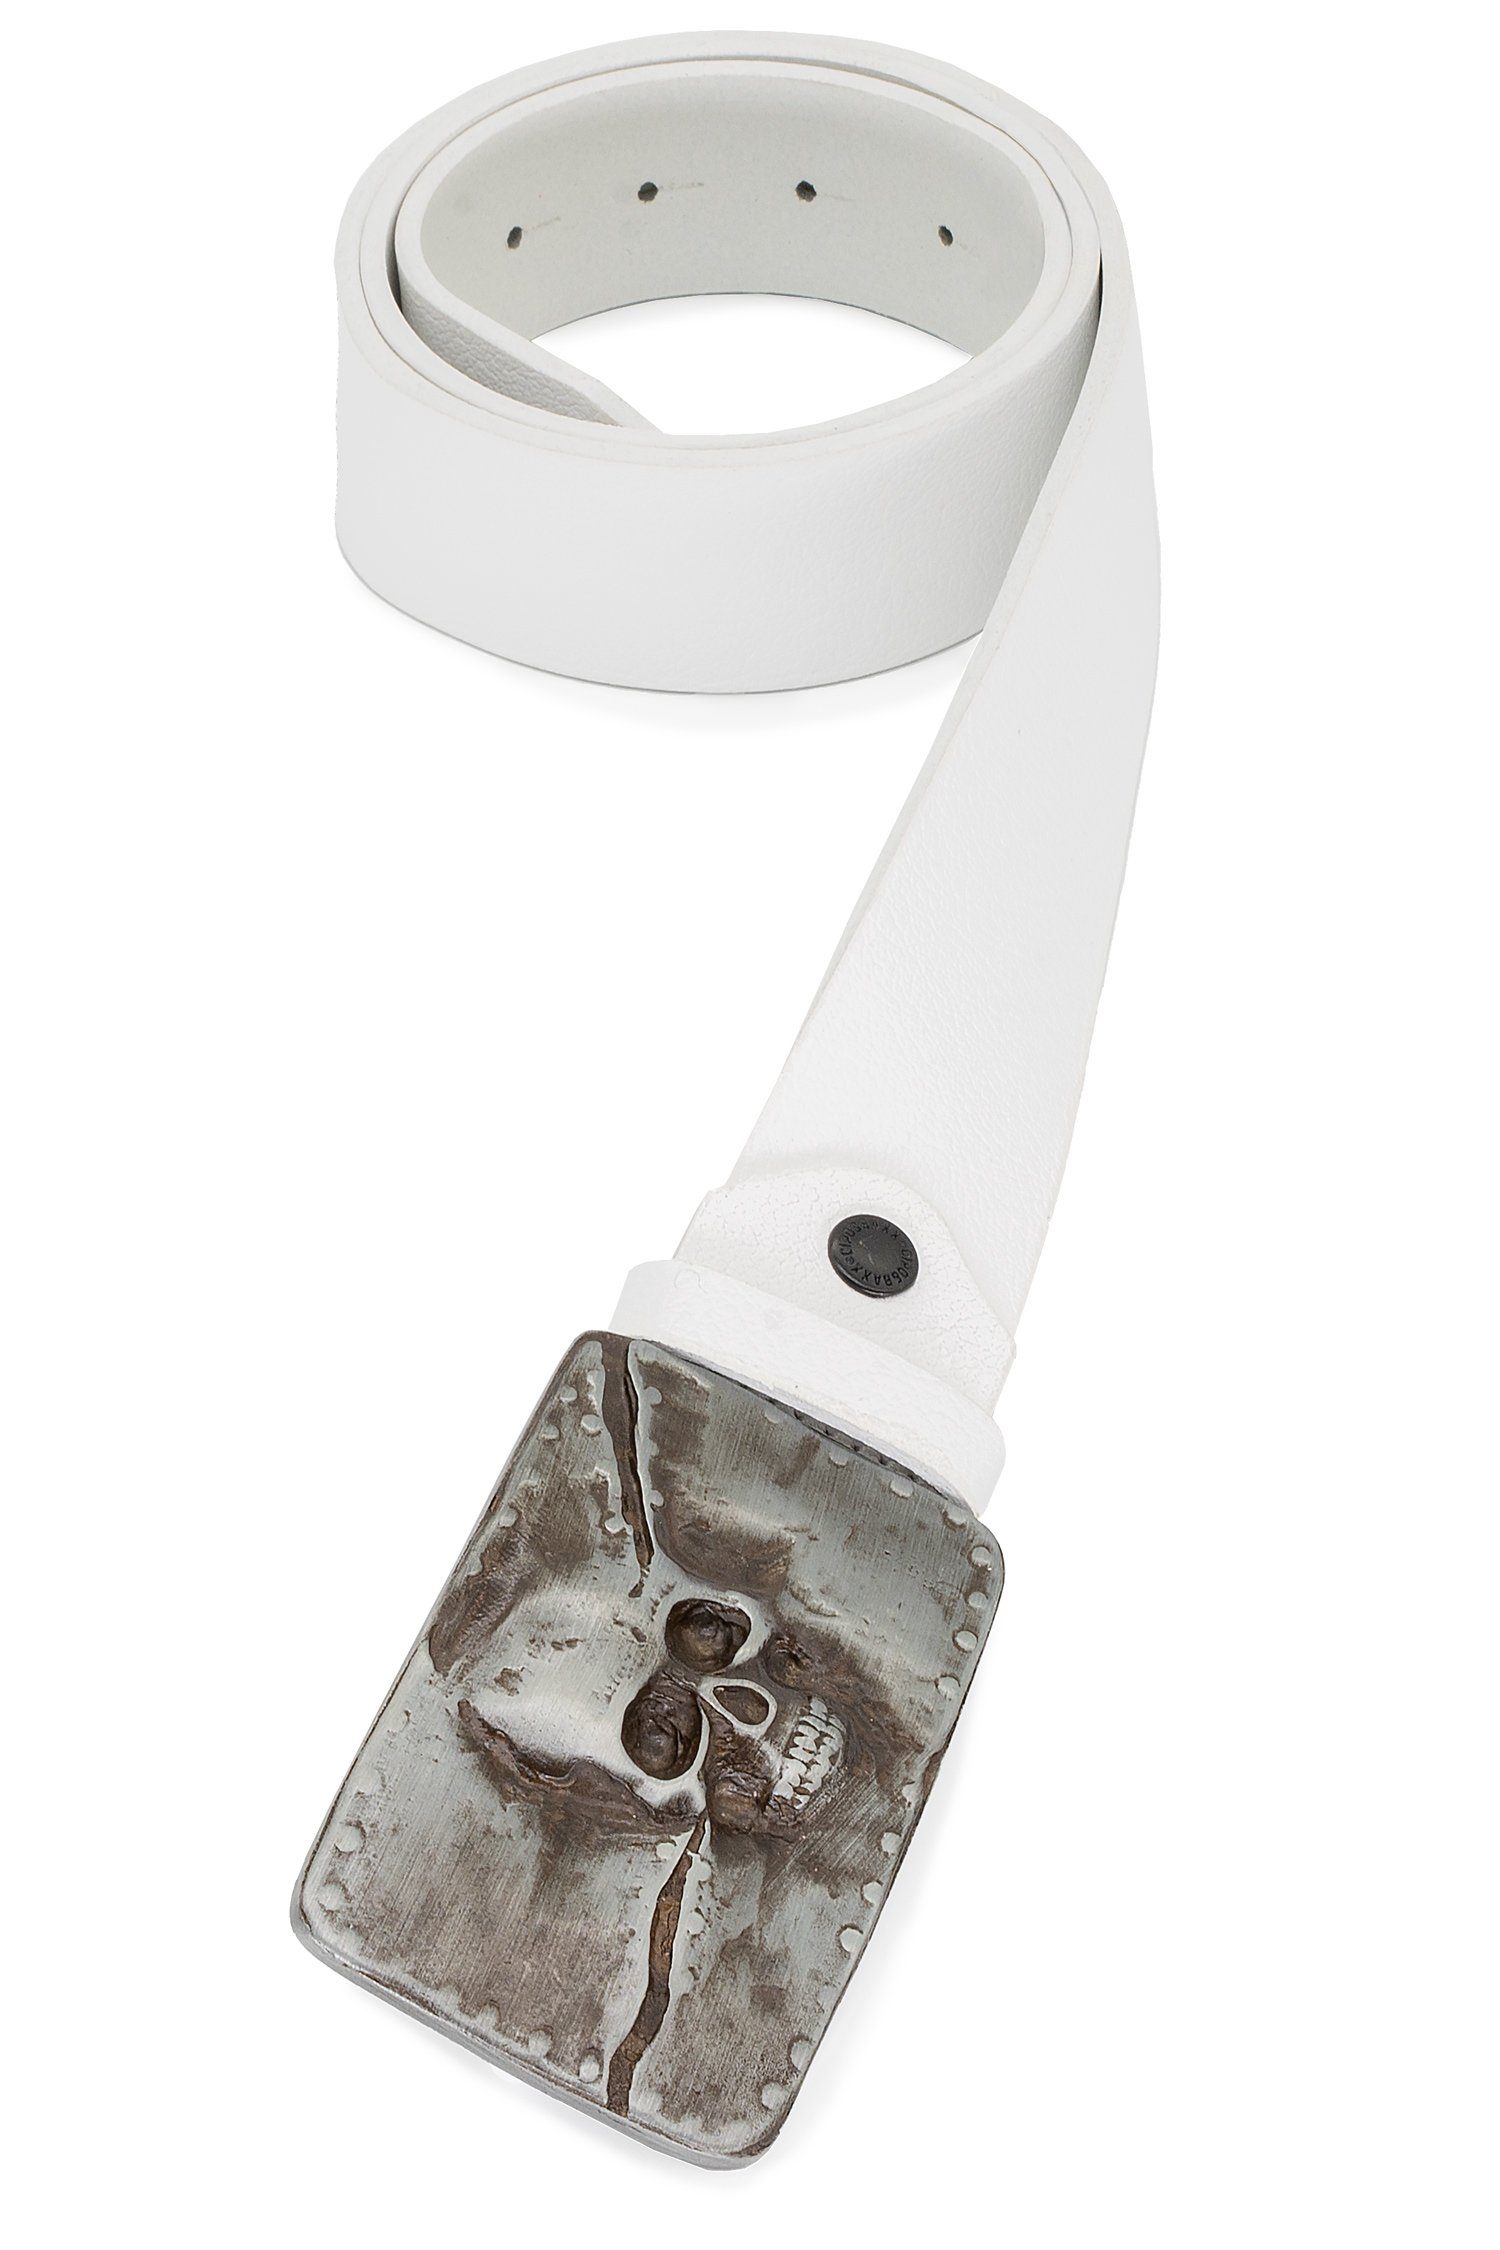 BA-CG170 Cipo Herren Metall und Schädel-Motiv Baxx Schnalle Patch Ledergürtel mit Weiß & Gürtel